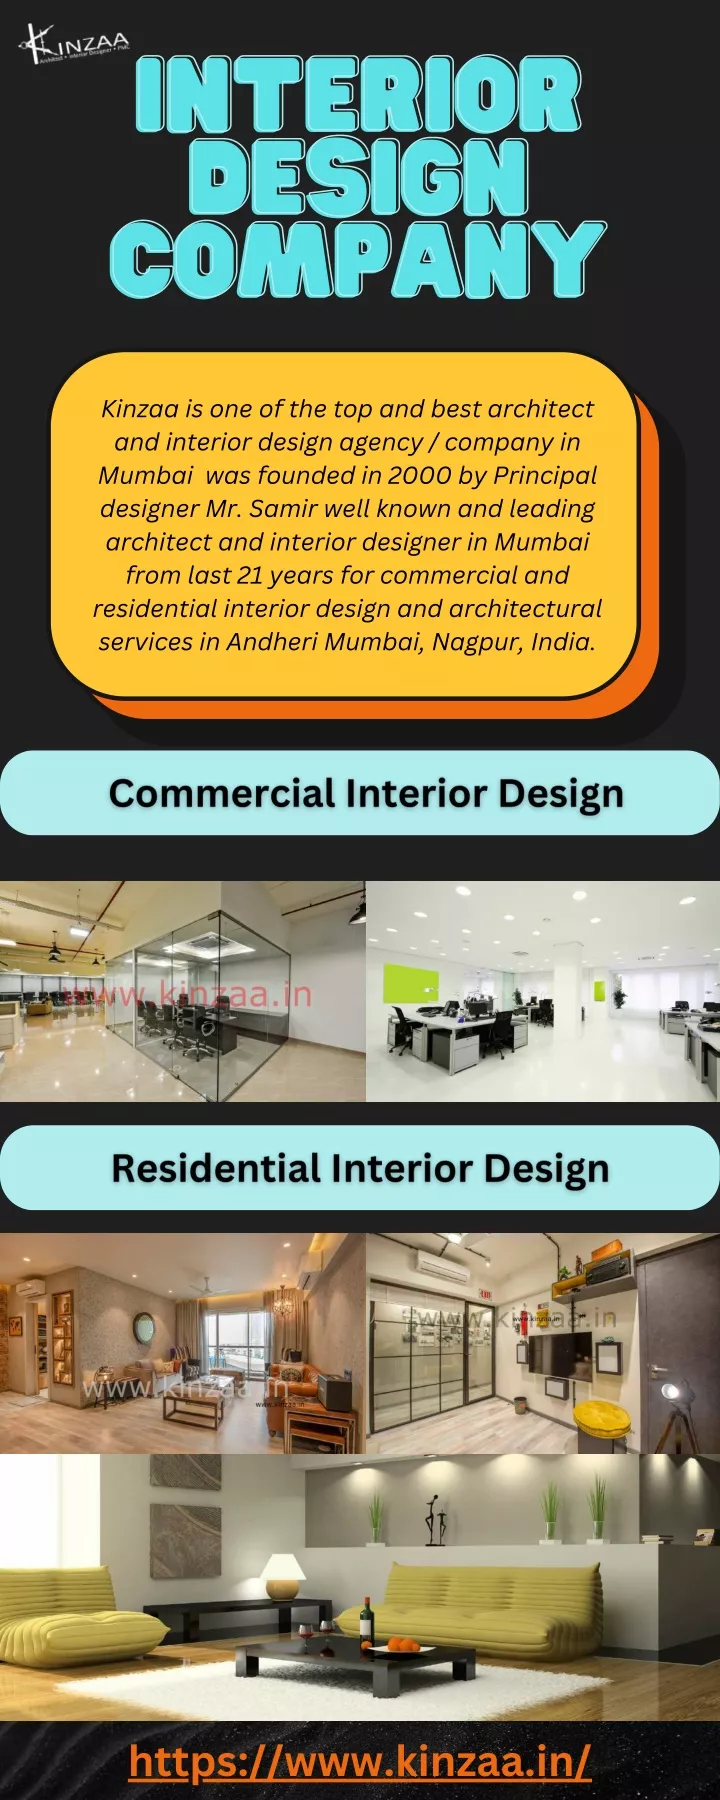 interior interior design design company company